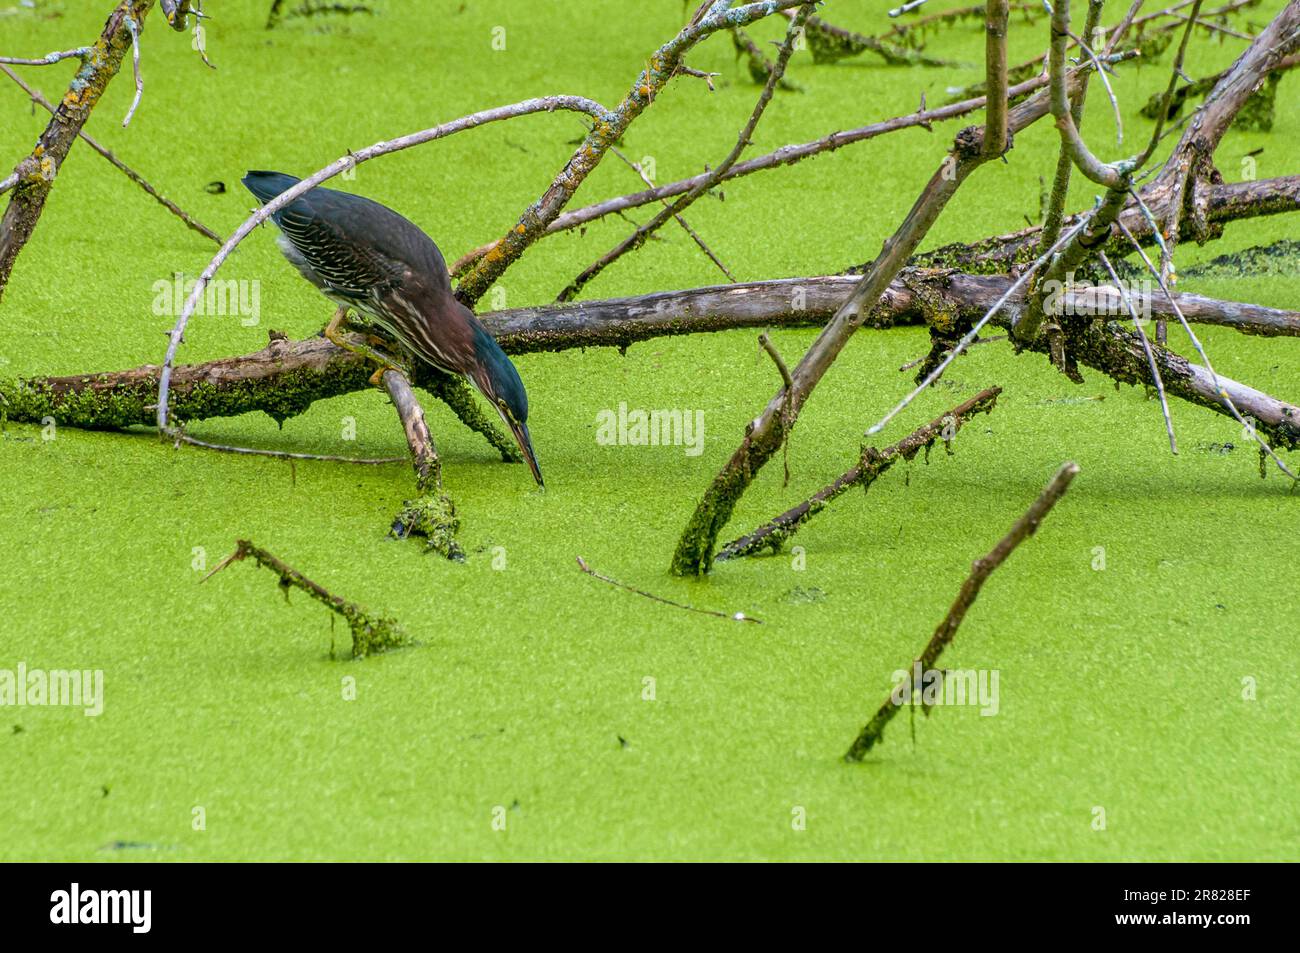 Vadnais Heights, Minnesota. Parco Regionale del Lago di Vadnais. Un airone verde, Butorides virescens caccia di pesce in uno stagno coperto di alge. Foto Stock